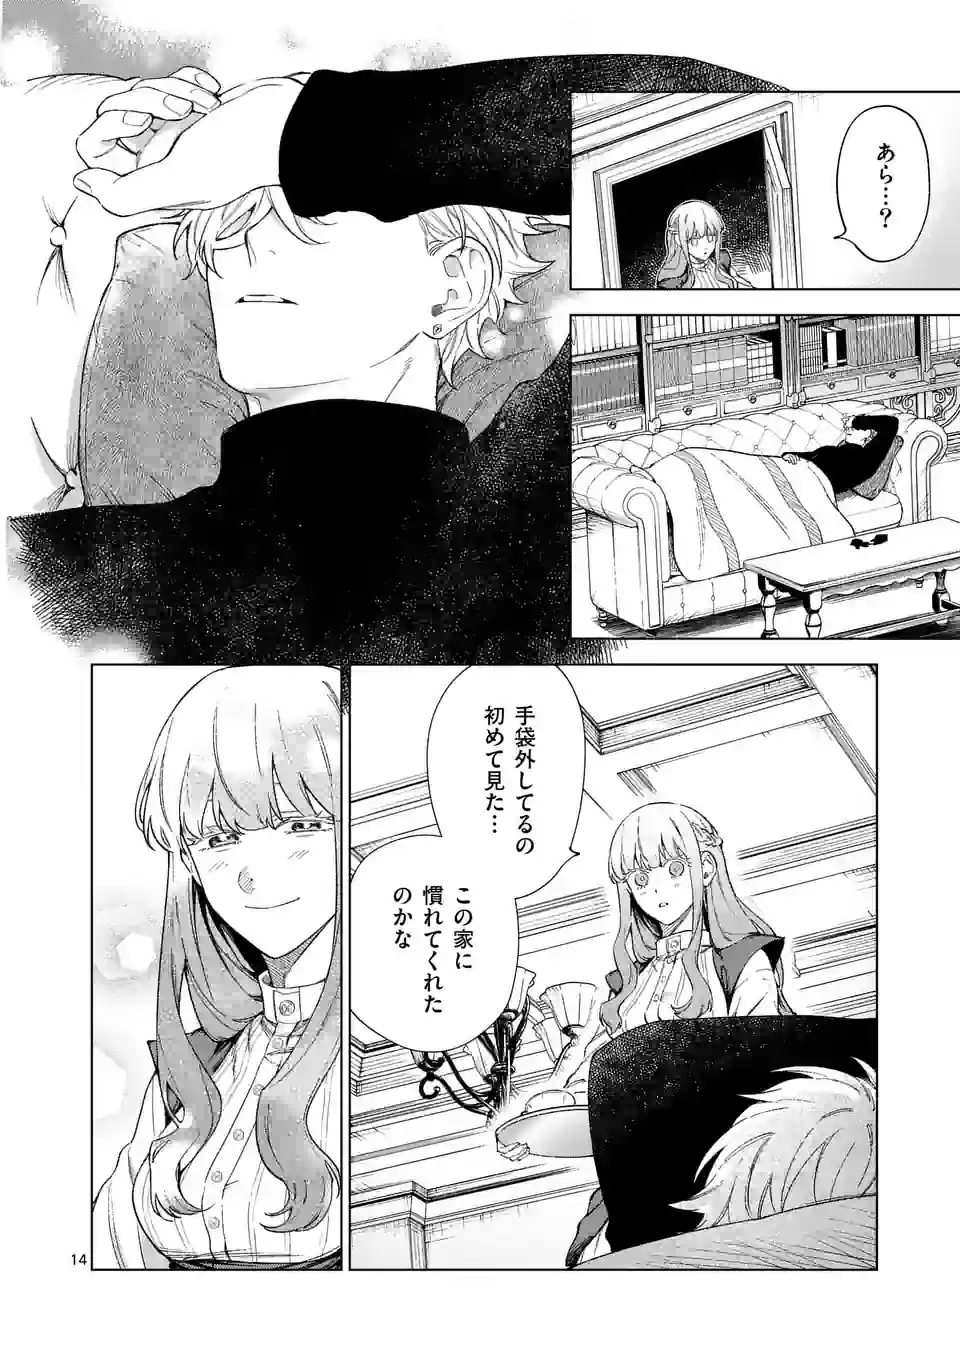 Mou Kyoumi ga Nai to Rikonsareta Reijou no Igai to Tanoshii Shinseikatsu - Chapter 9.2 - Page 2